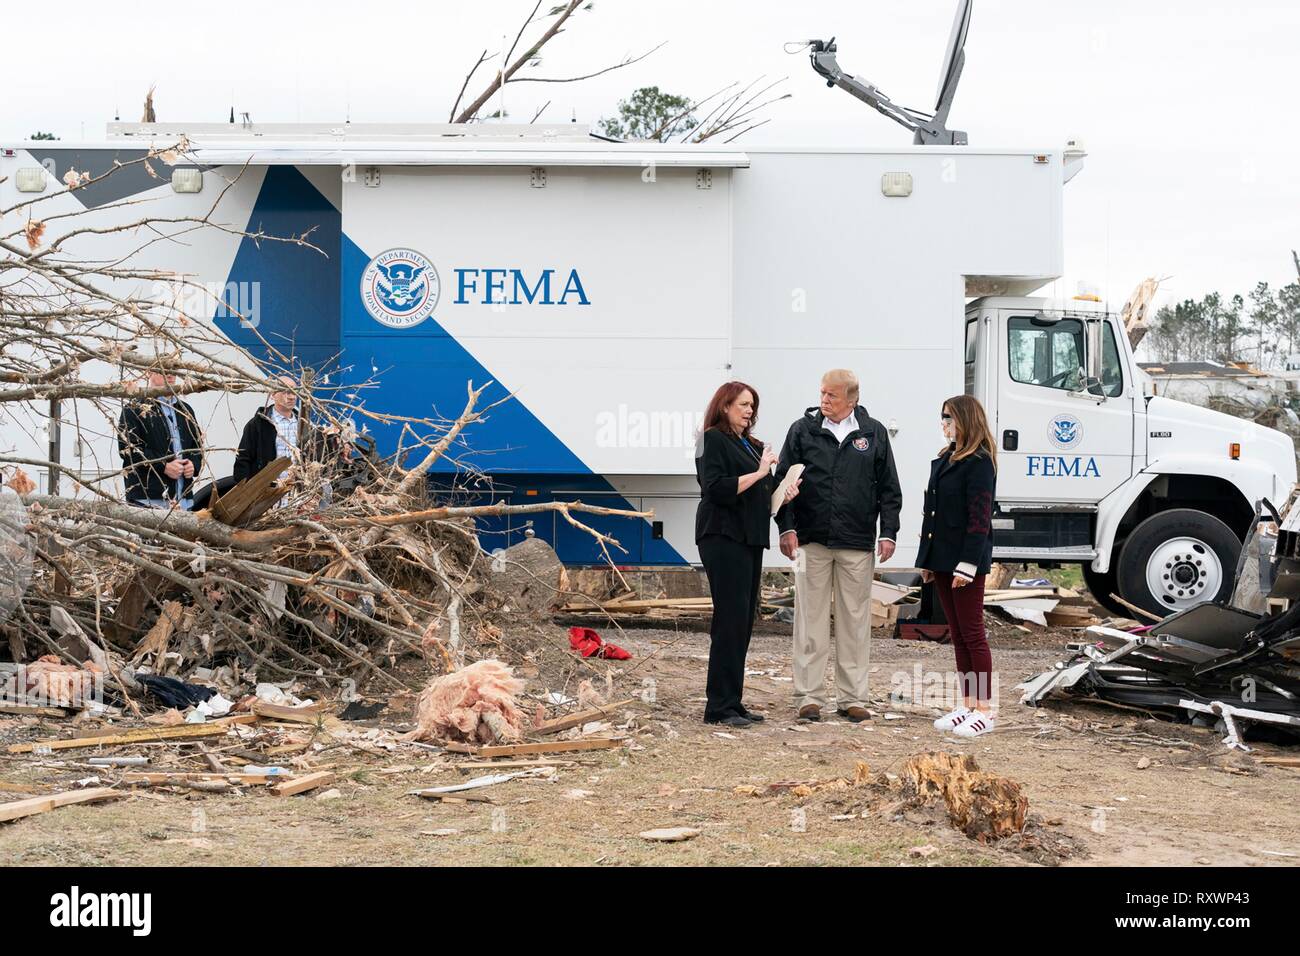 U.S prima signora Melania Trump e presidente Donald Trump visualizza i danni provocati da una massiccia tornado Marzo 8, 2019 in Lee County, Alabama. La regione è stata colpita da un tornado il 3 marzo uccidendo 23 persone. Foto Stock